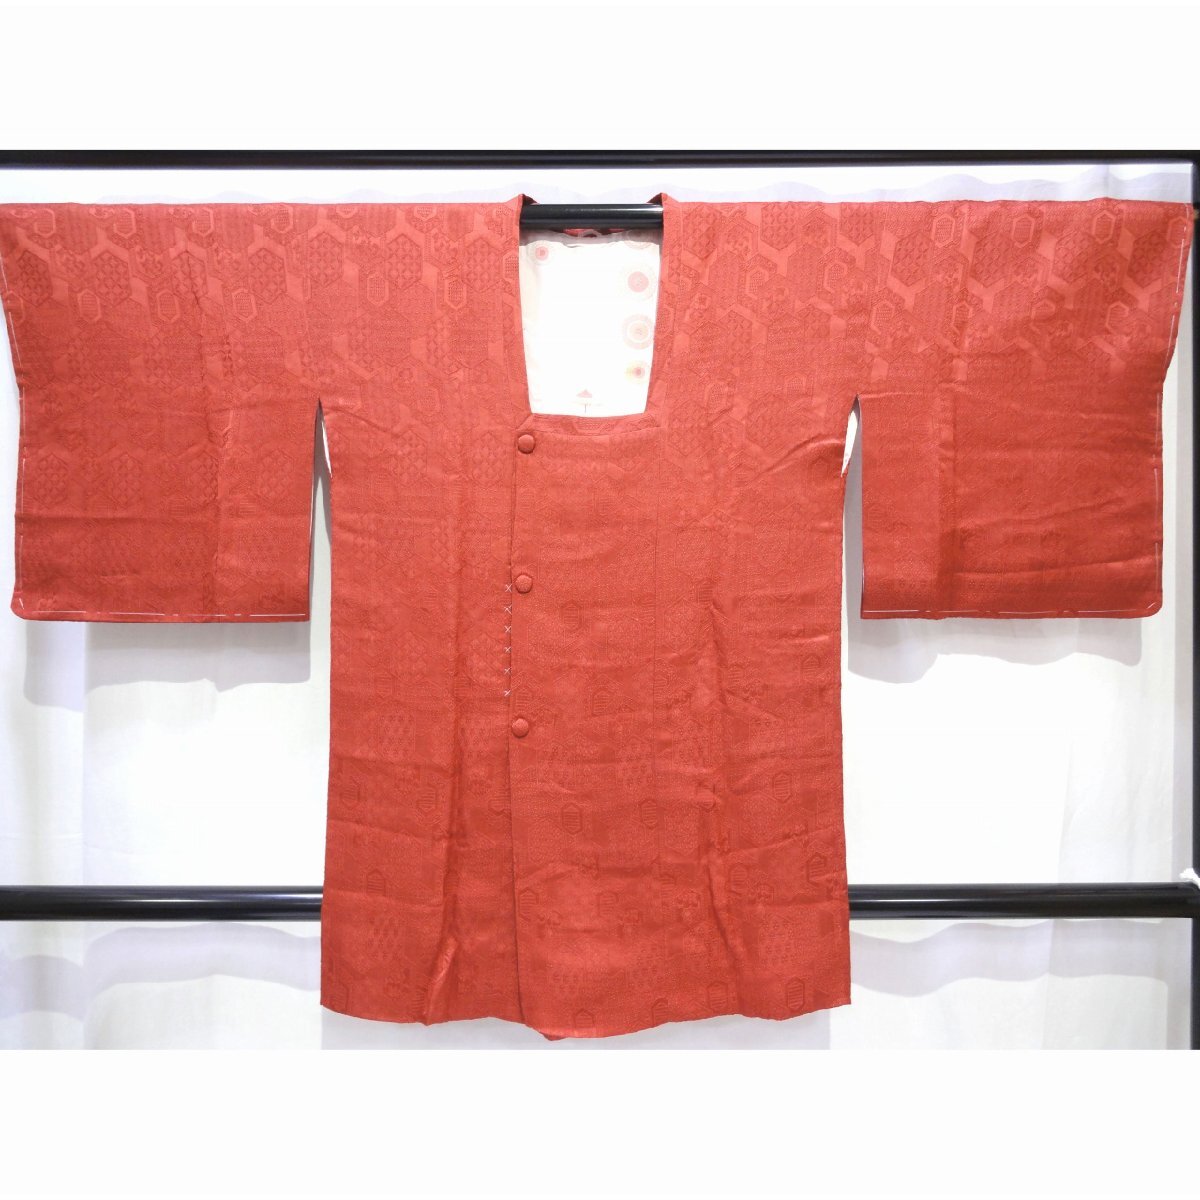 正絹・道行・着物・和装コート・No.200701-0445・梱包サイズ60